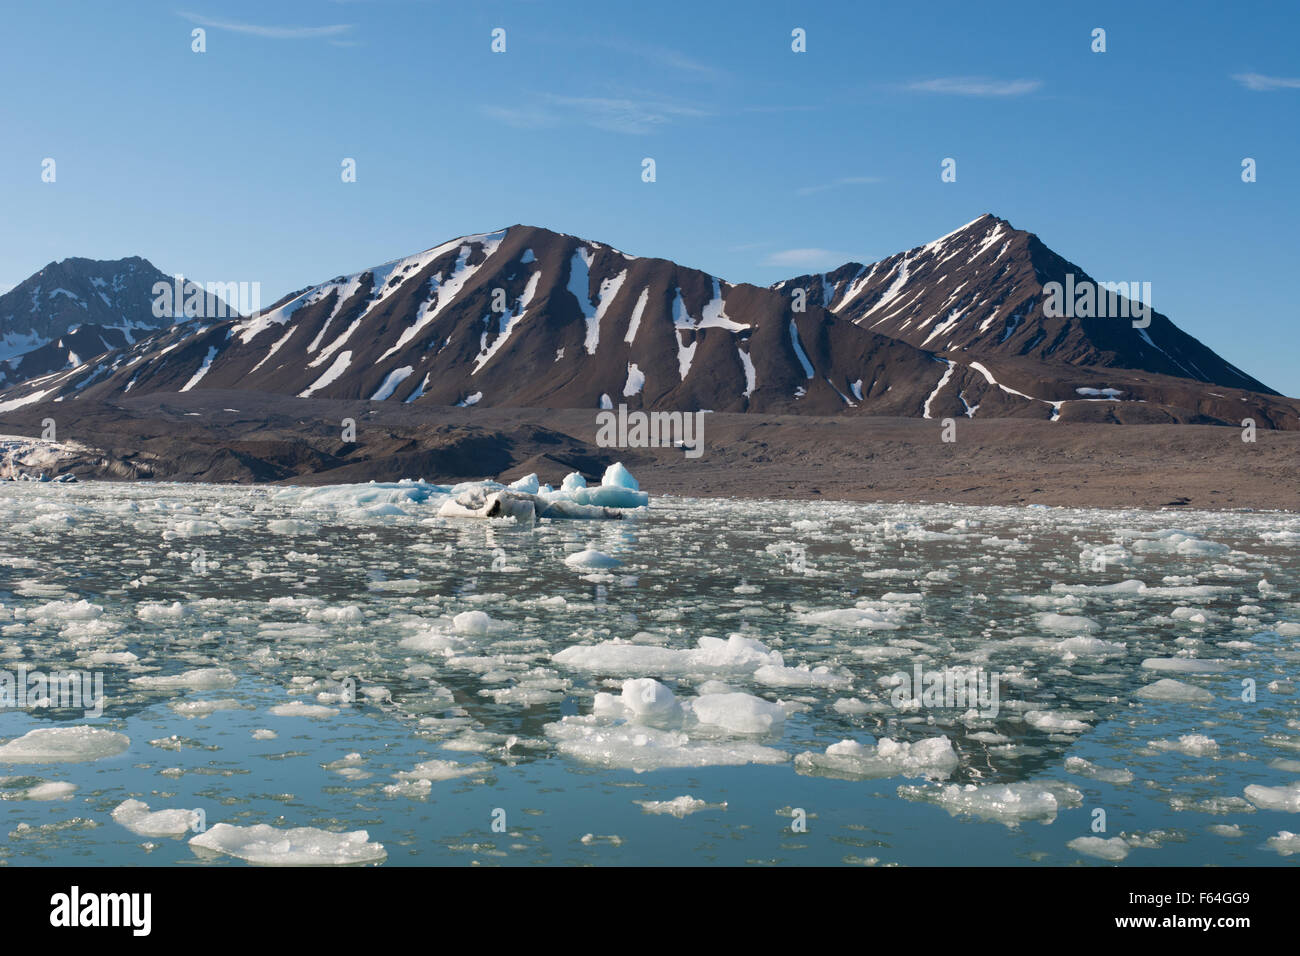 Norvegia, il Mare di Barents, Svalbard, Spitsbergen. La baia è calma e paesaggio di montagna nella parte anteriore del XIV Luglio ghiacciaio. Foto Stock